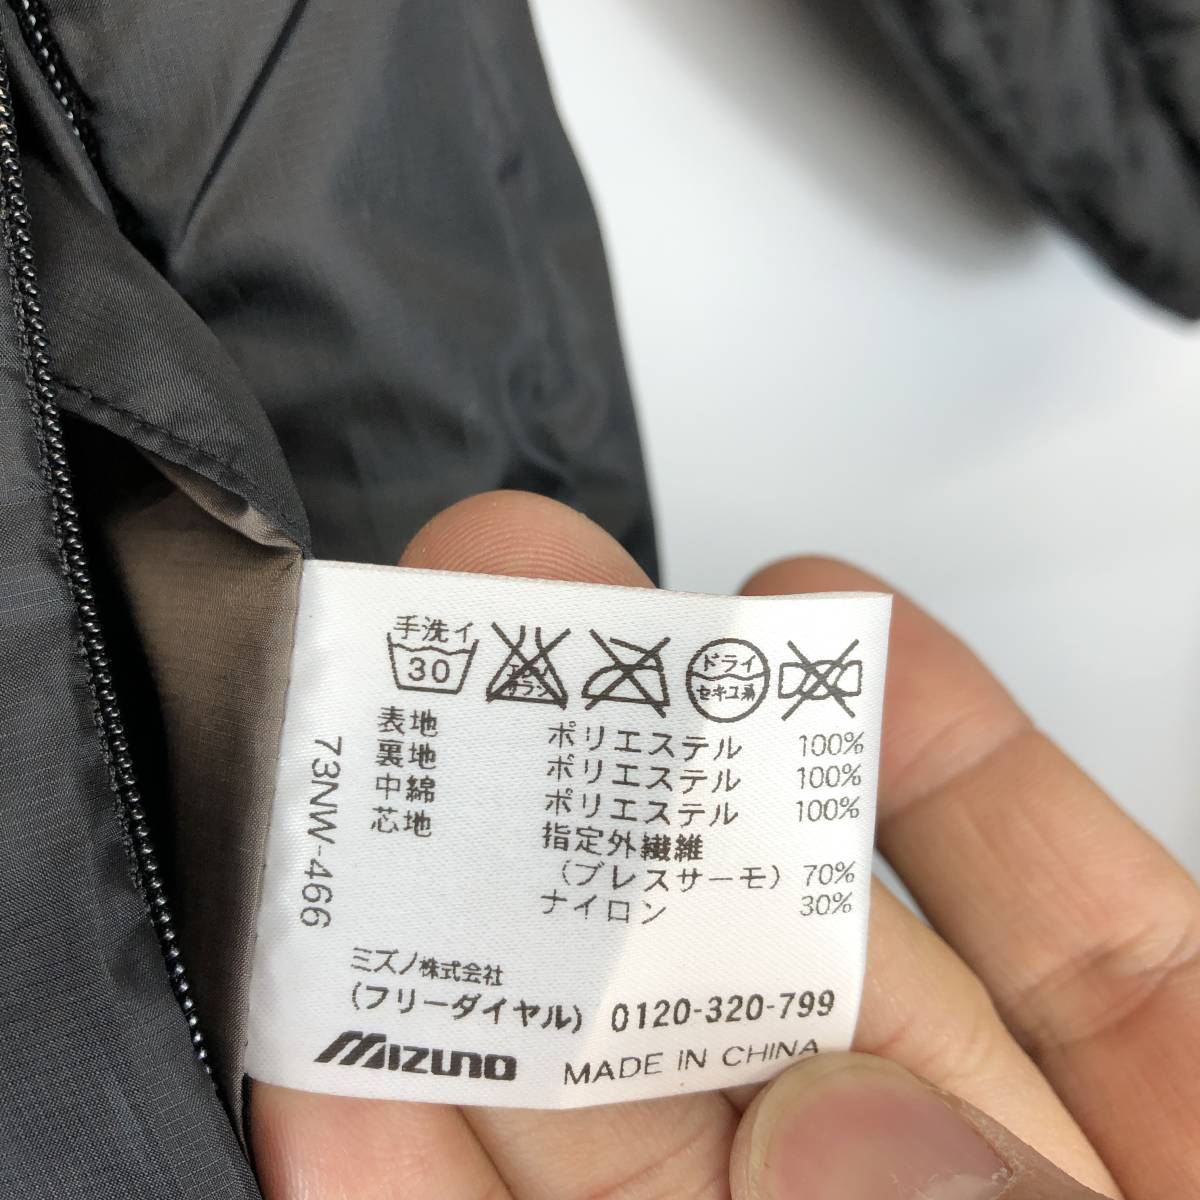 MIZUNO ... на улице   ...  наполнитель   пиджак   черный   женский L размер   7 претензии и возврат товара не принимаются W-466 